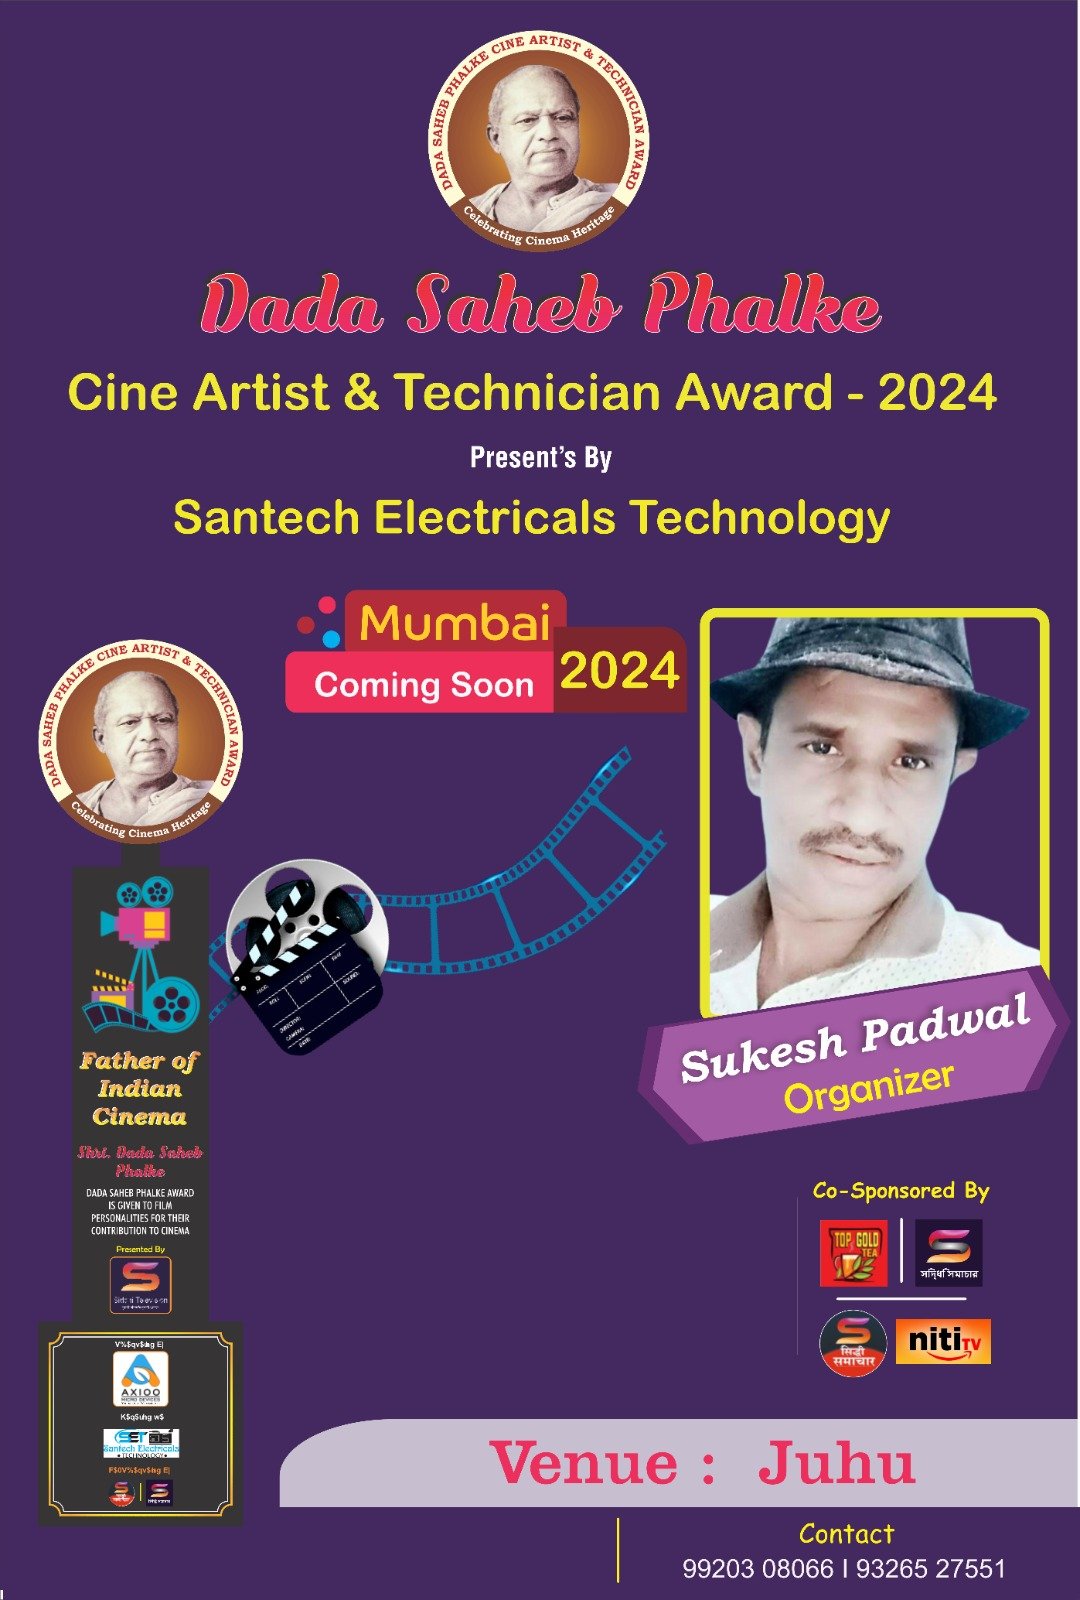 सनटेक इंजीनियरिंग मुंबई में करेगा दादा साहेब फाल्के टेक्नीशियन अवॉर्ड